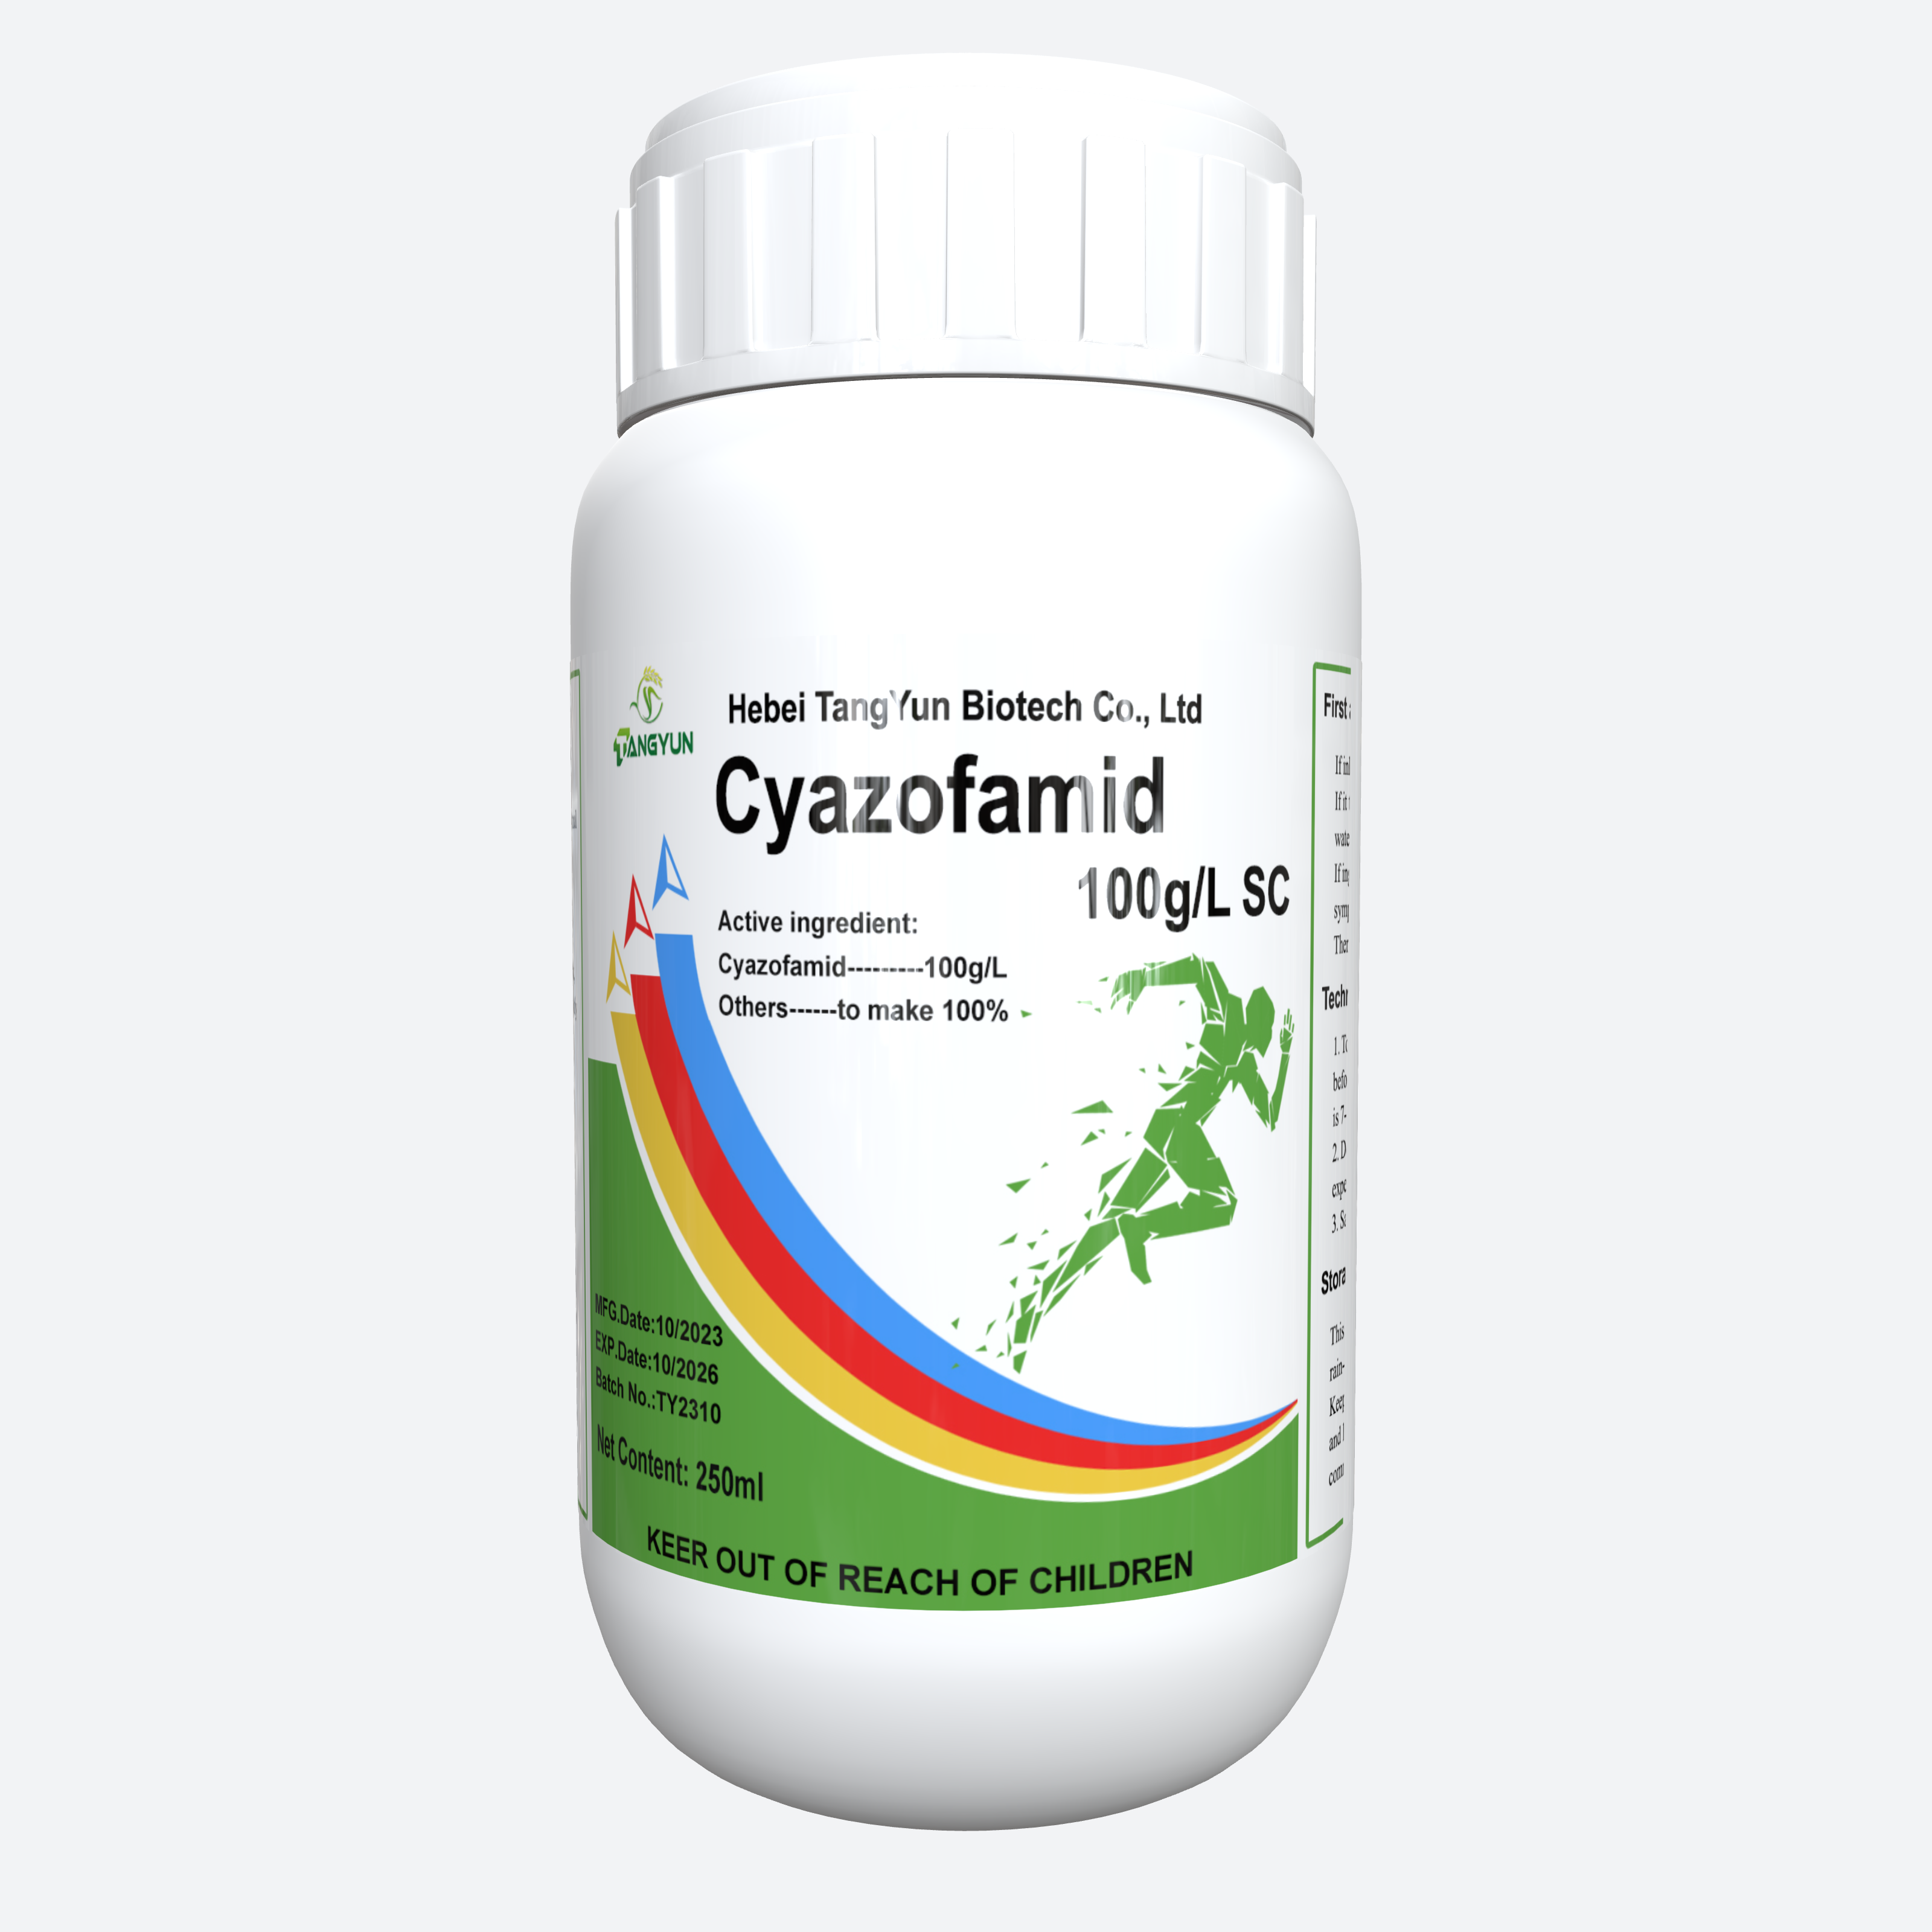 Cyazofamid 100g/LSC